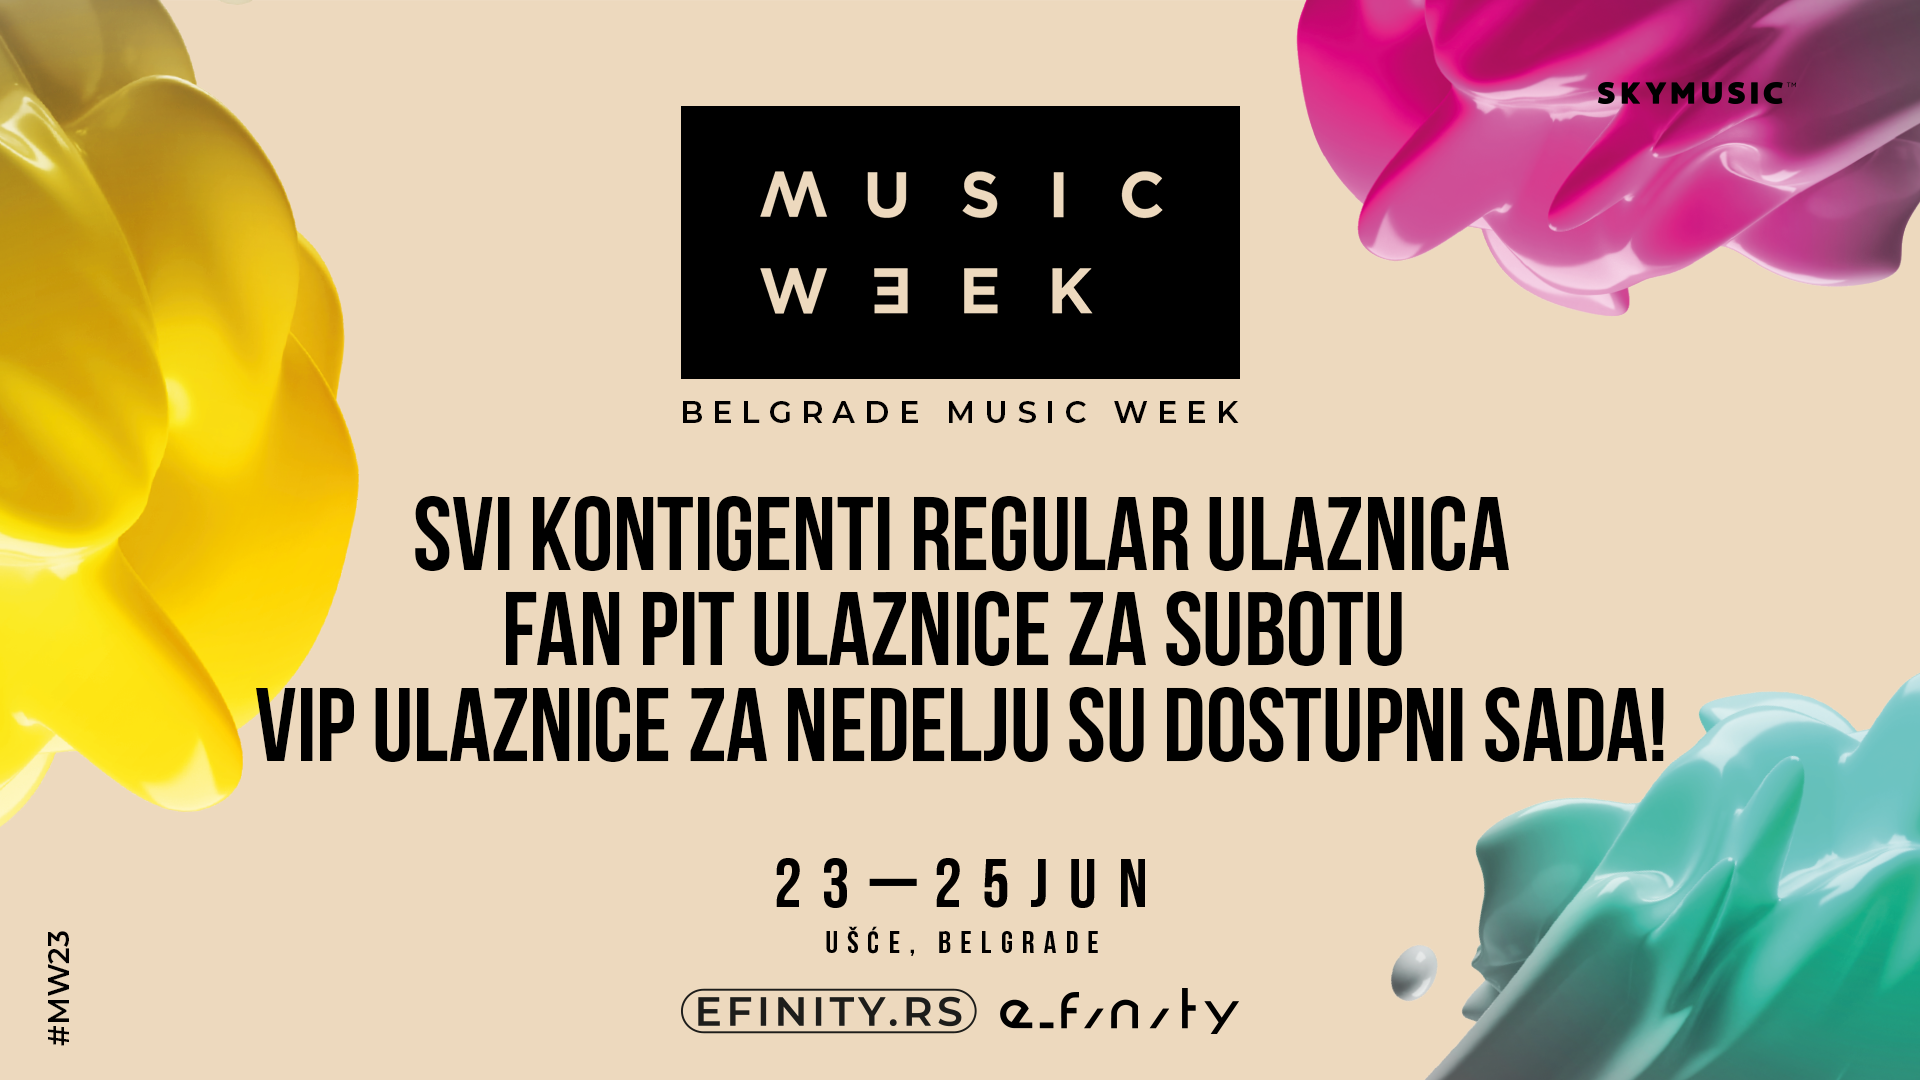 Unprecedented interest in Belgrade Music Week